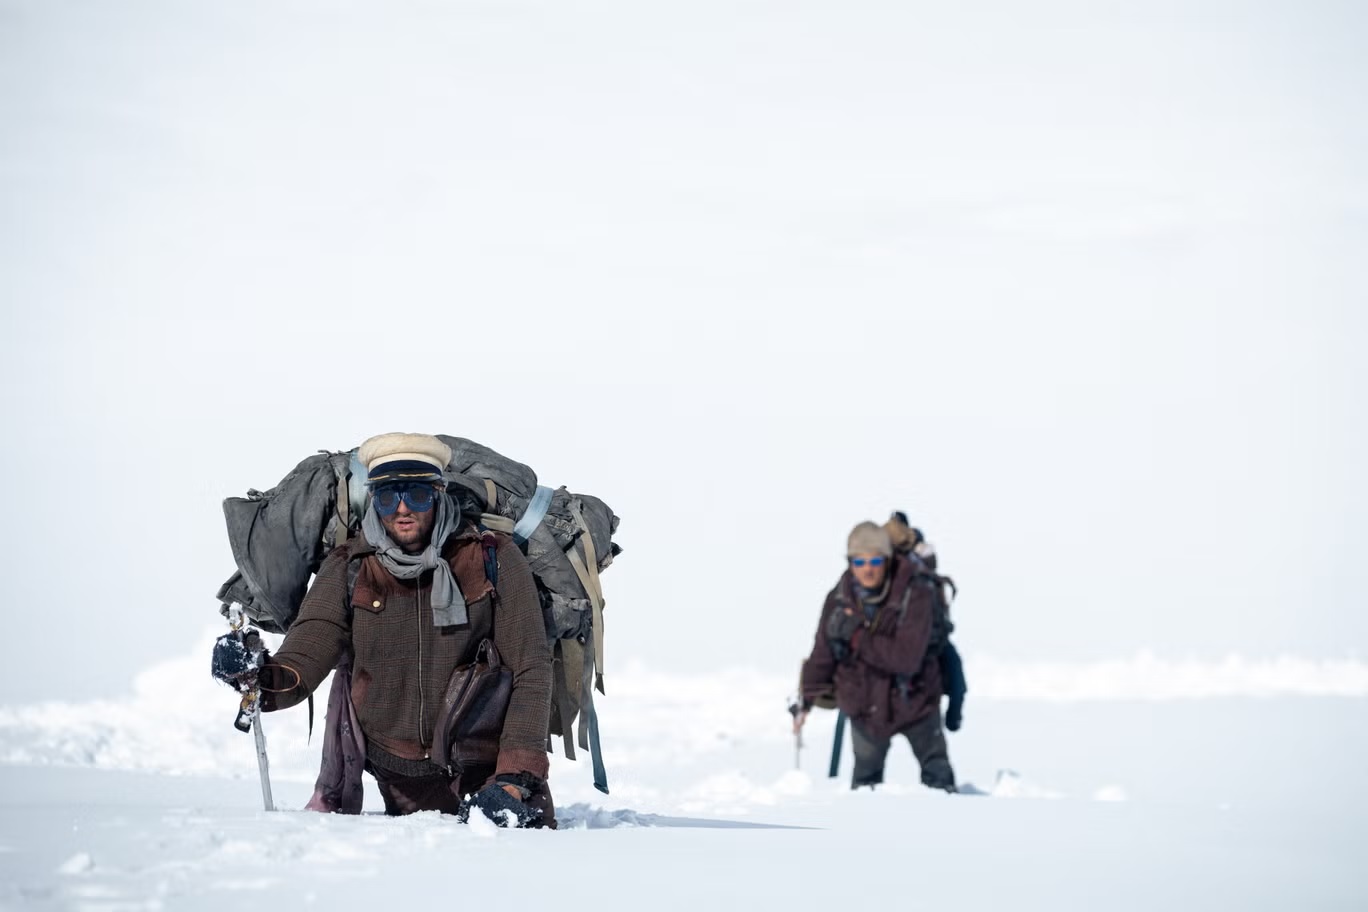 أوغستين ديلا كورتي في دور "فيزينتين" في فيلم "مجتمع الثلج" (نتفليكس)